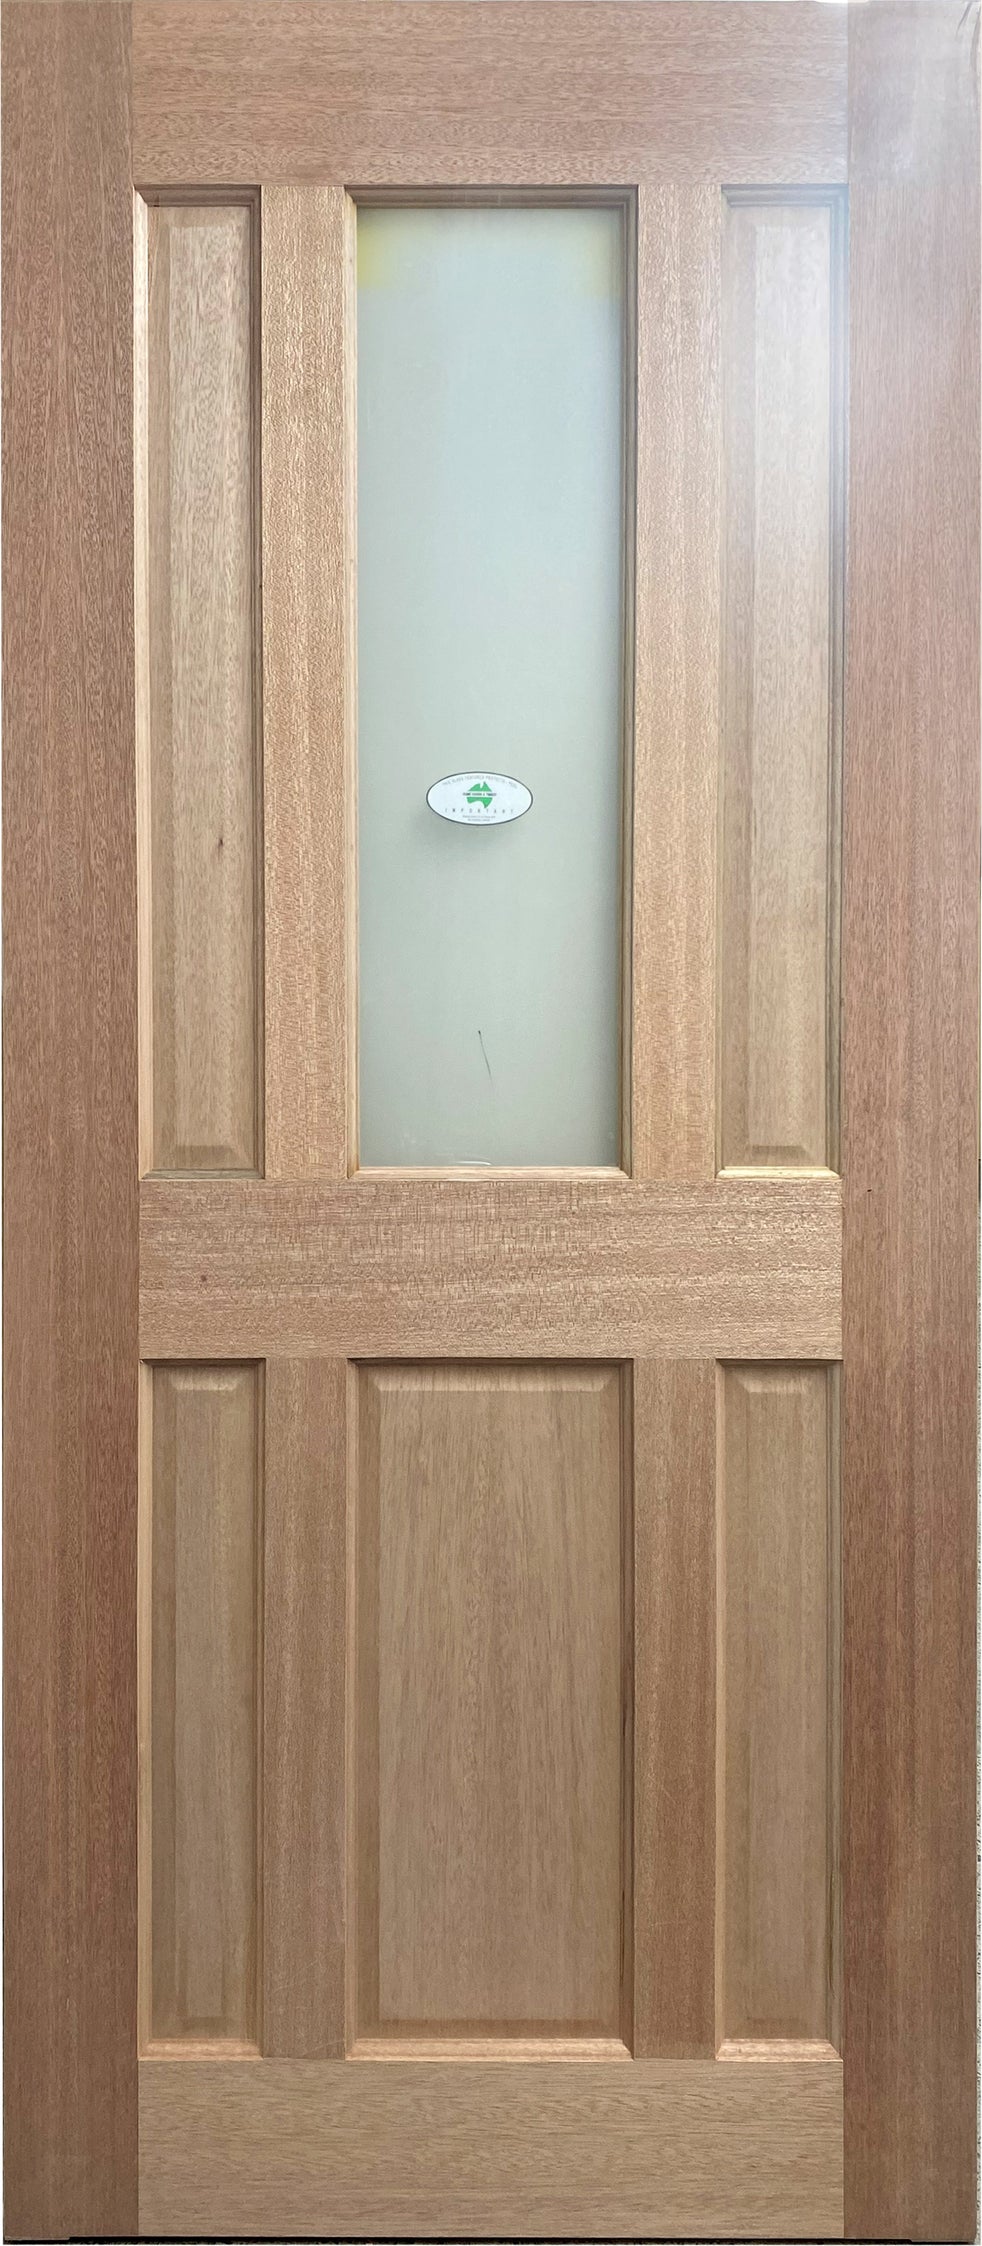 XL6 Meranti Veneered Door